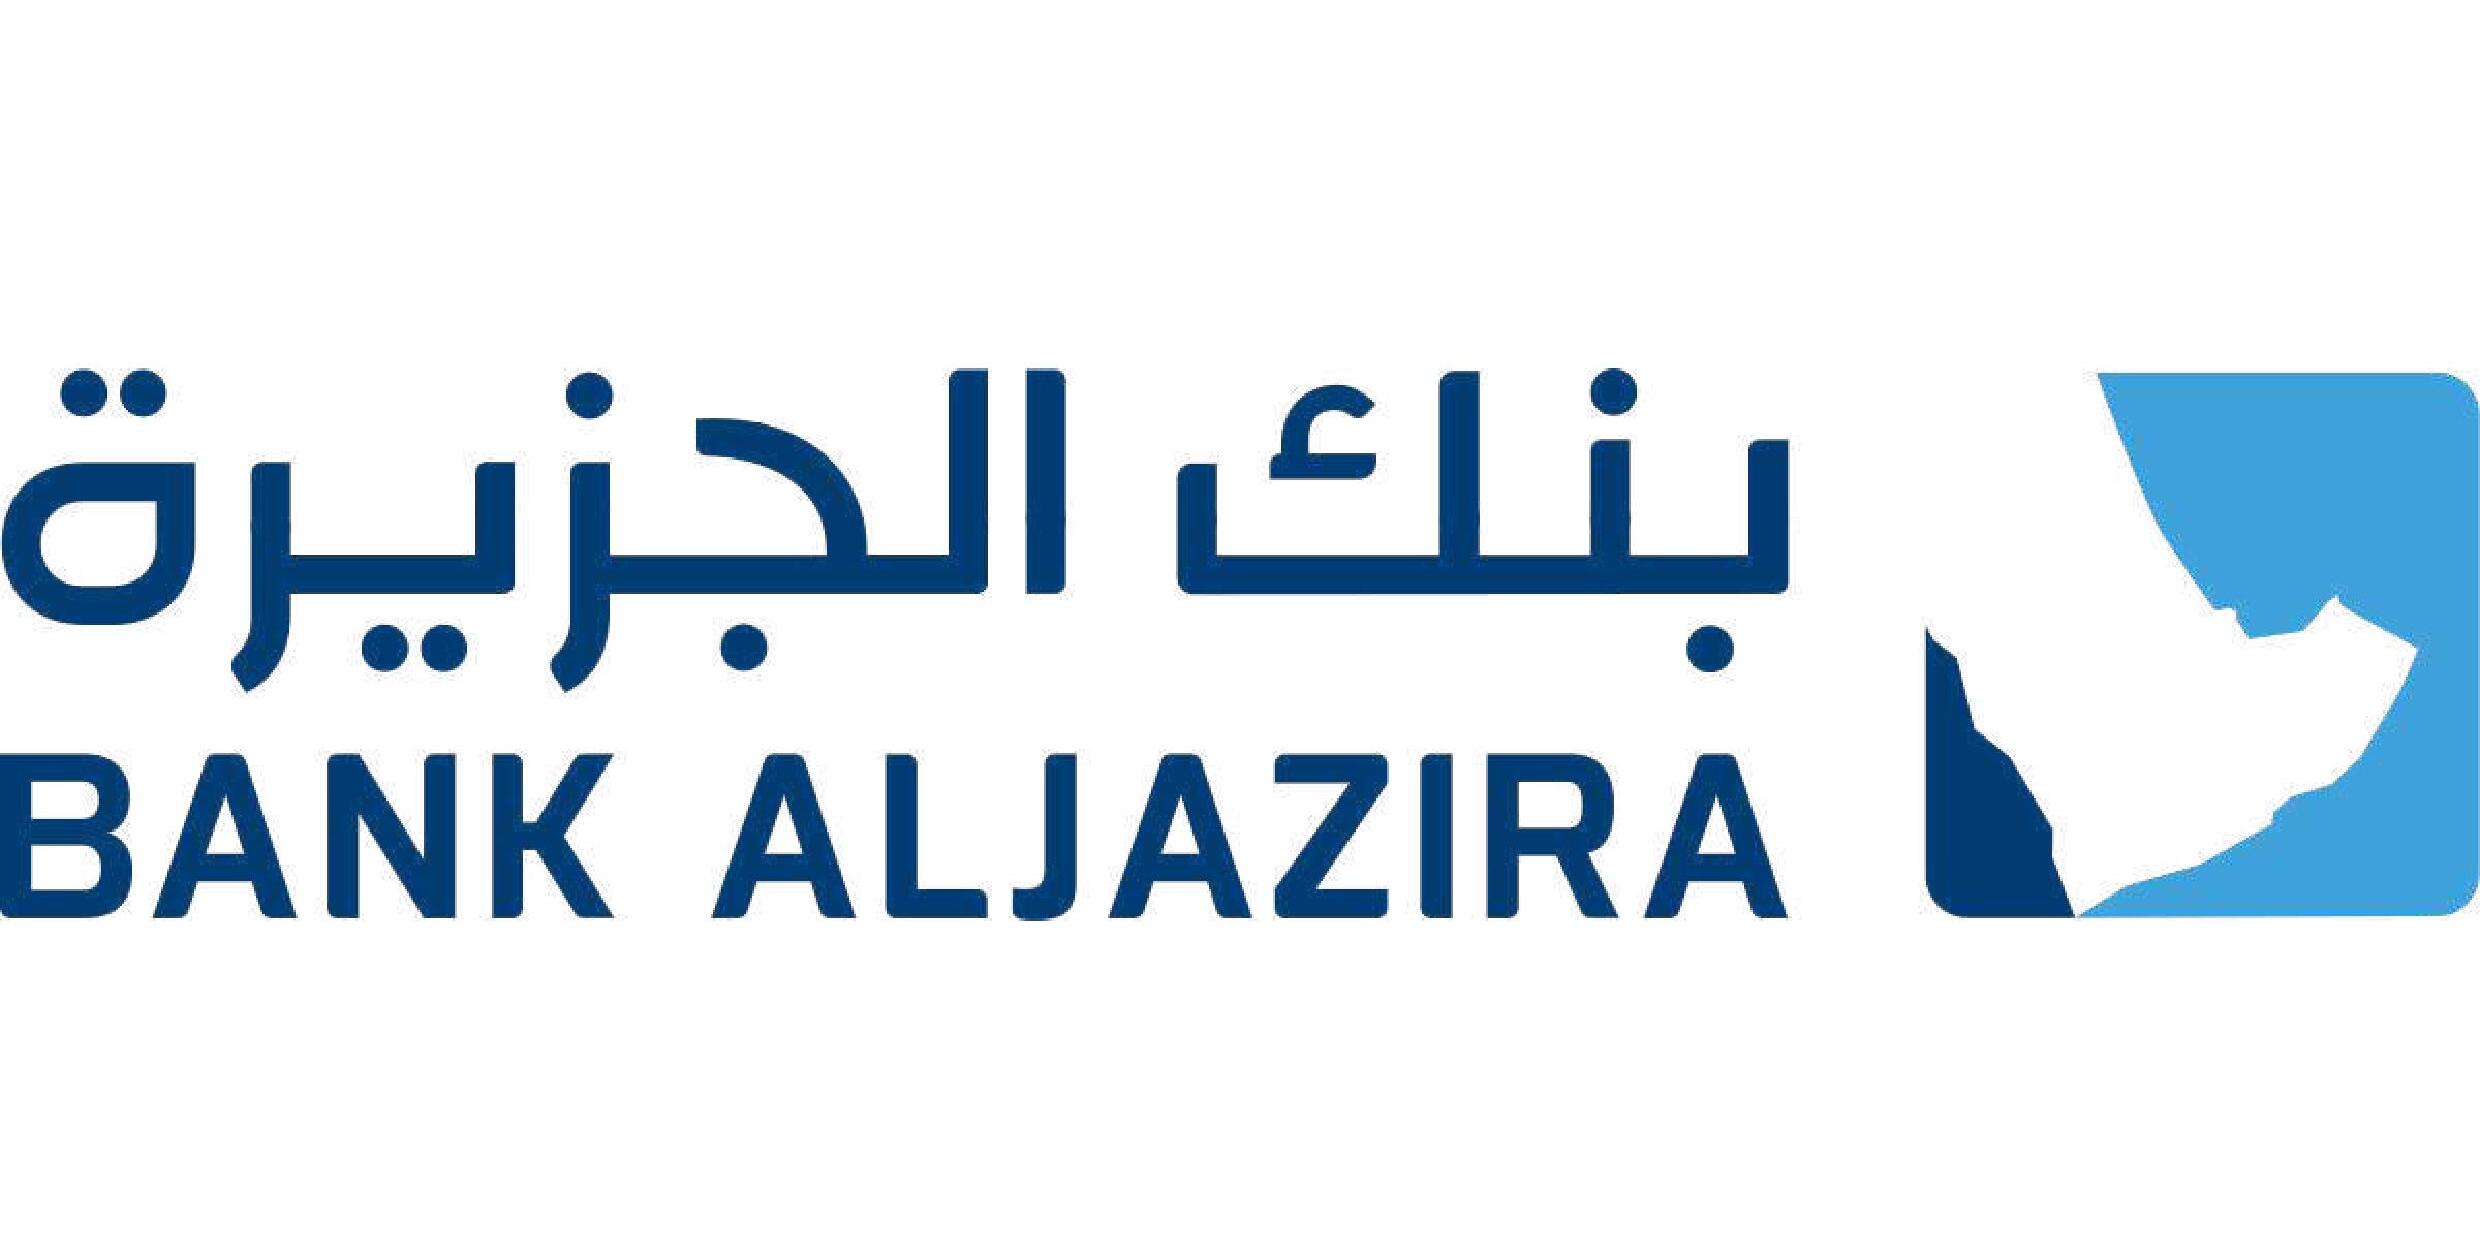 Bank Aljazira